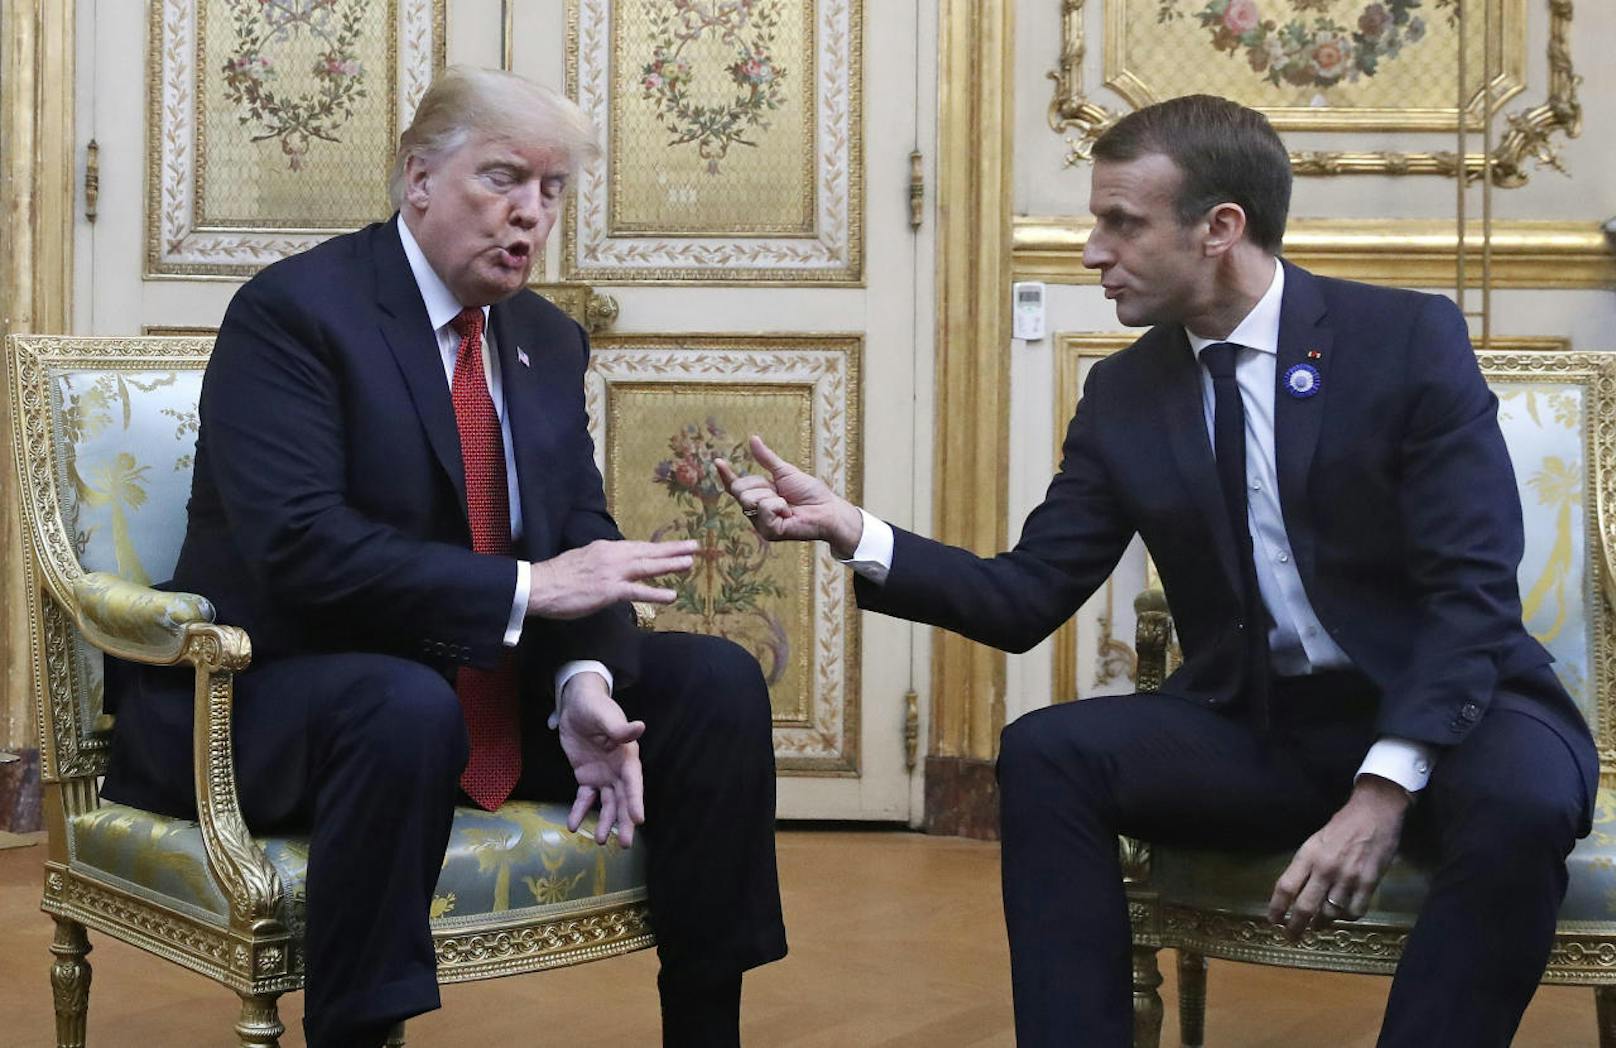 Macron zeigte Gnade und ließ Trumps Hand anschließend los.